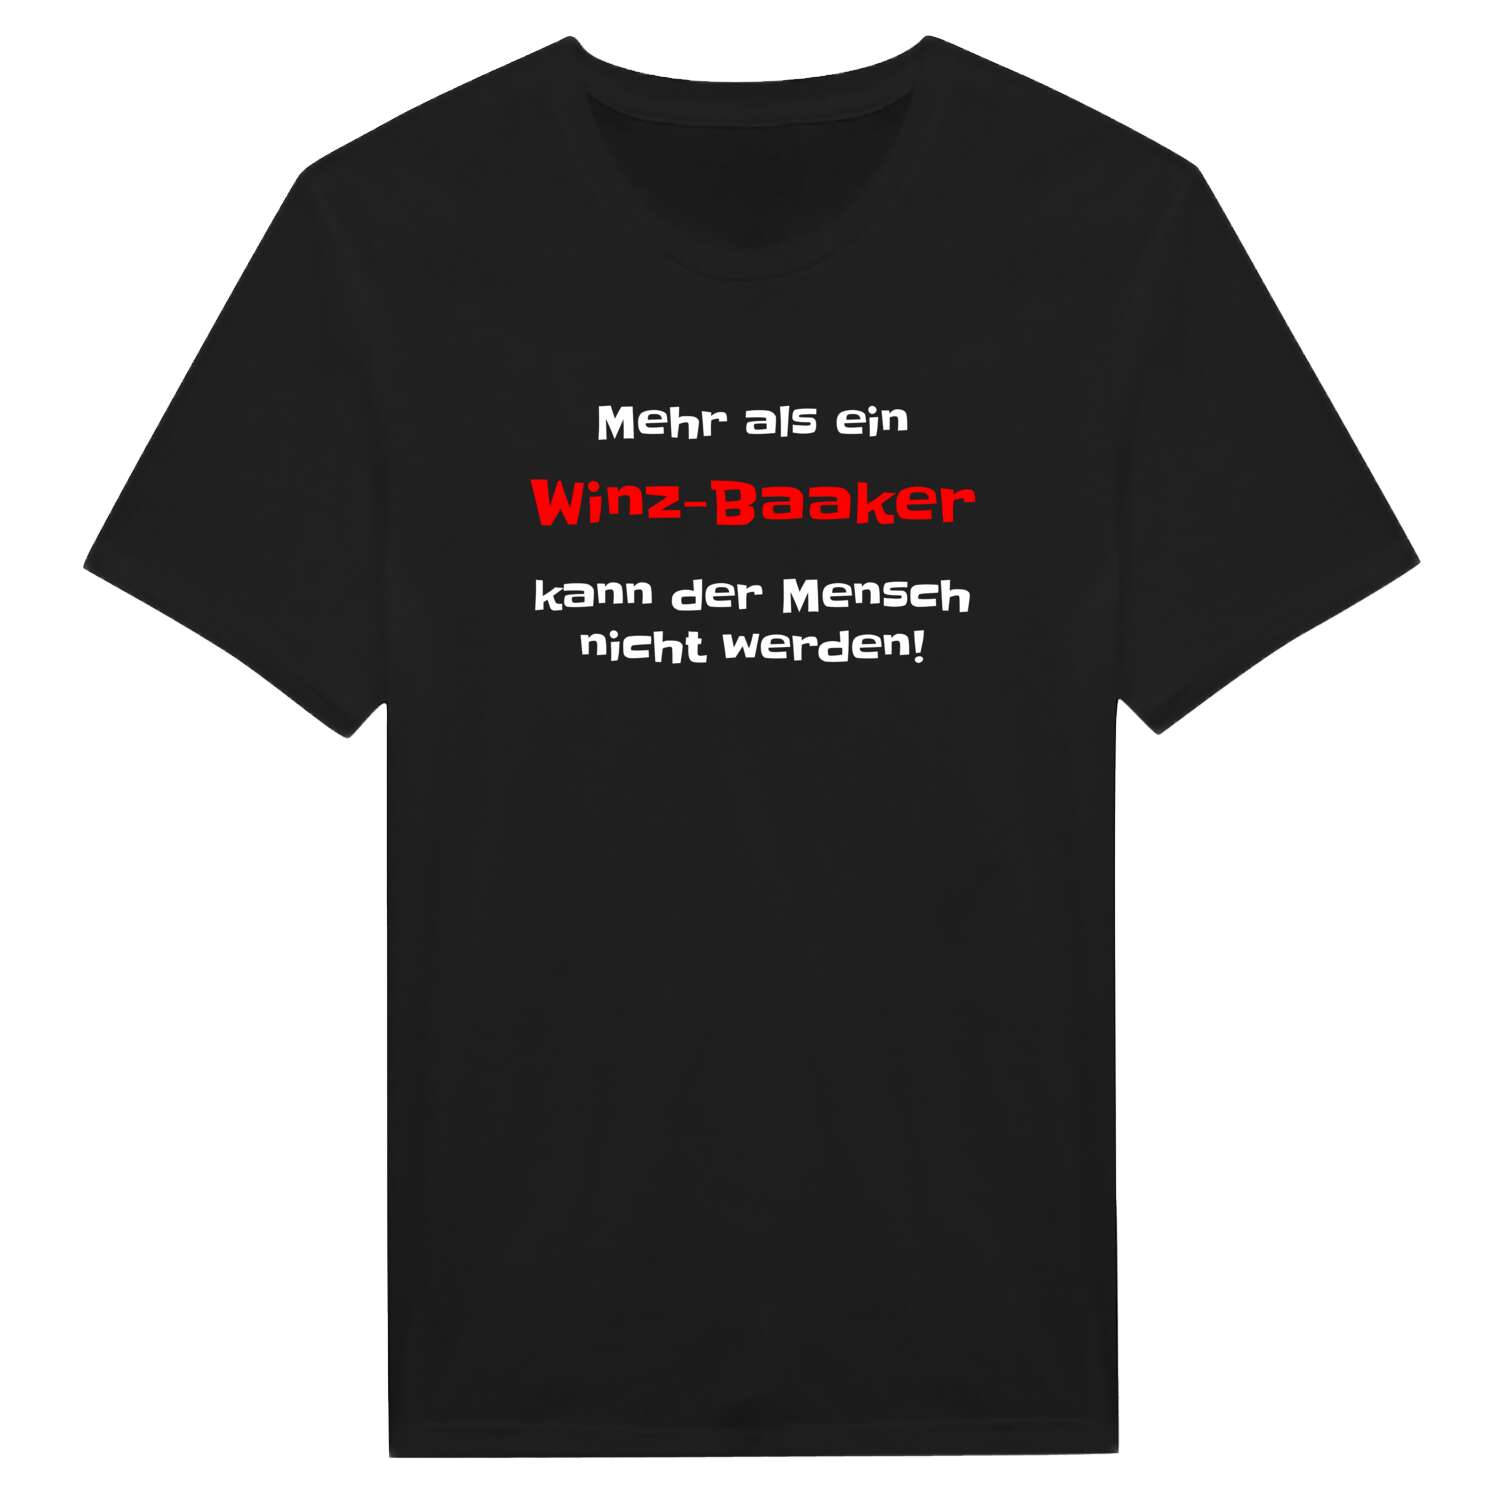 Winz-Baak T-Shirt »Mehr als ein«